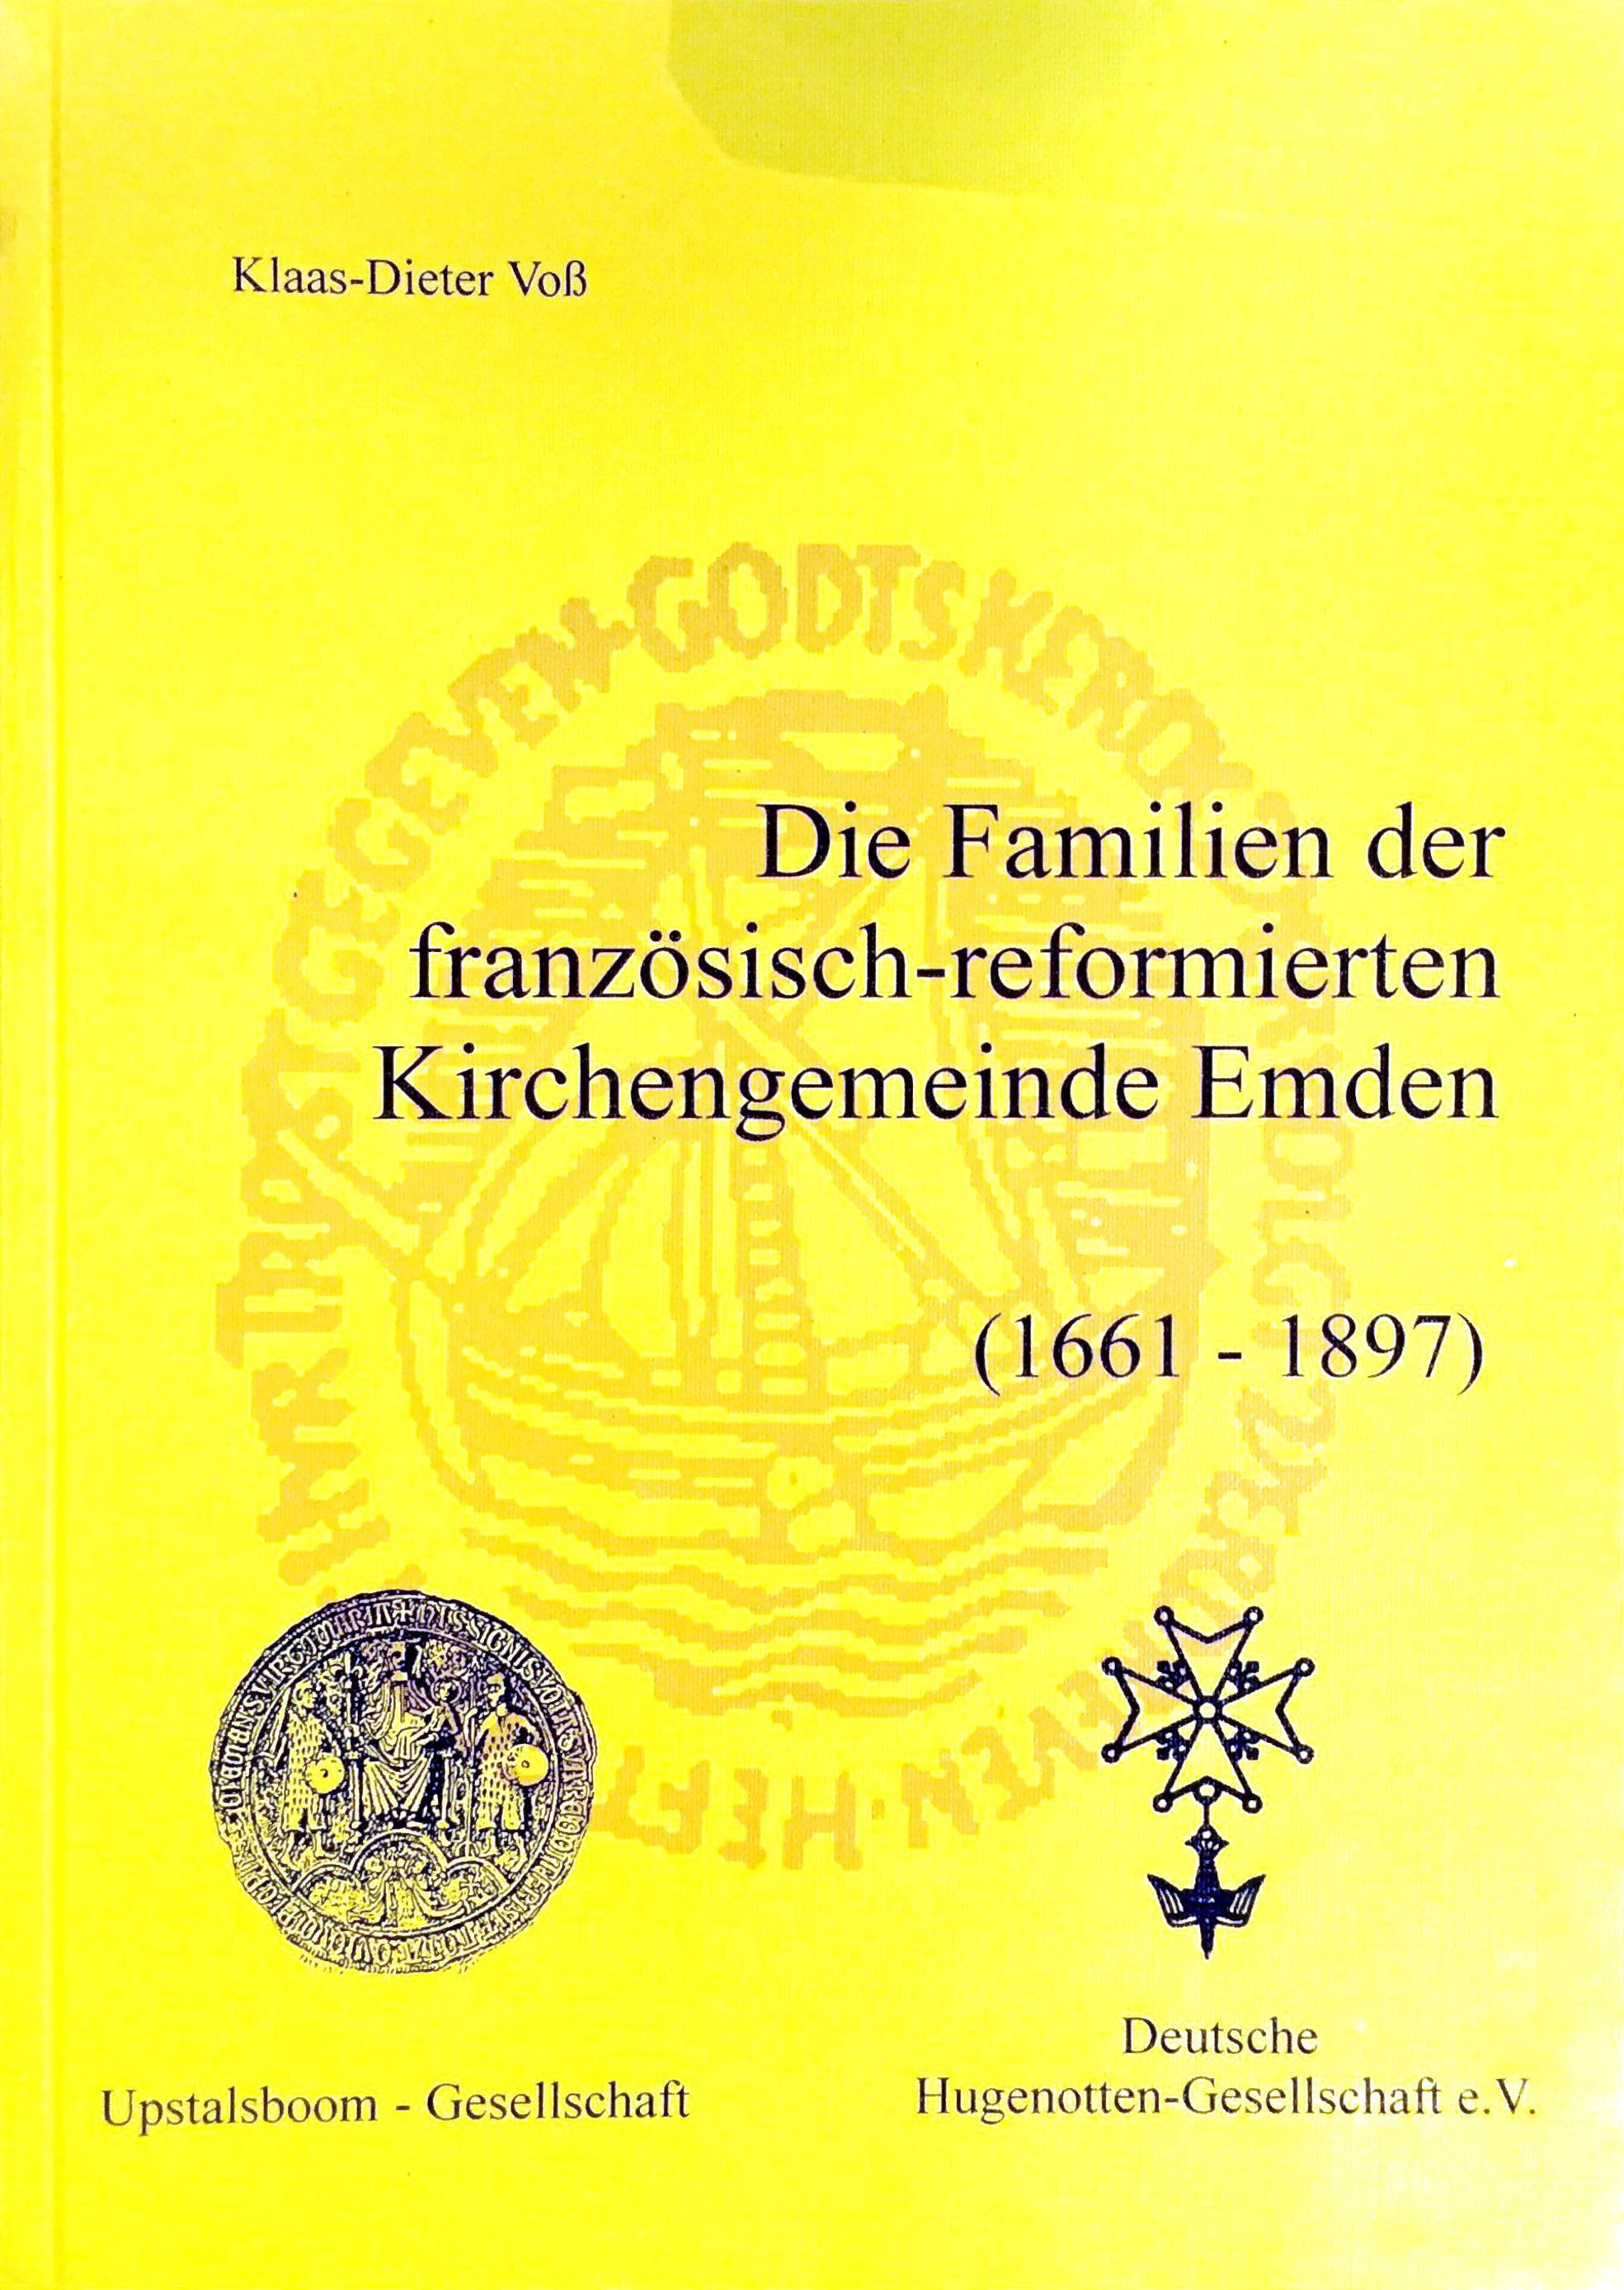 Die Familien der französisch-reformierten Kirchengemeinde Emden (1661 -1897) - (= Ostfrieslands Ortssippenbücher, Band 63) - Voß, Klaus-Dieter